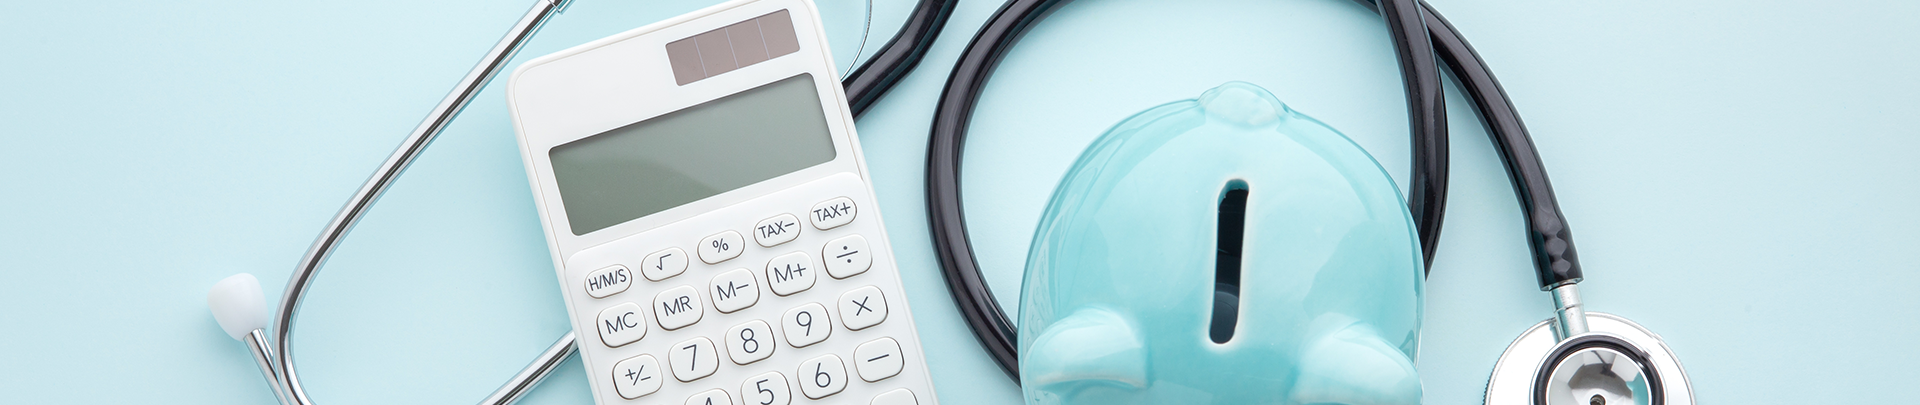 Zorgpremie: stethoscoop, blauw spaarvarken, rekenmachine op een blauwe achtergrond